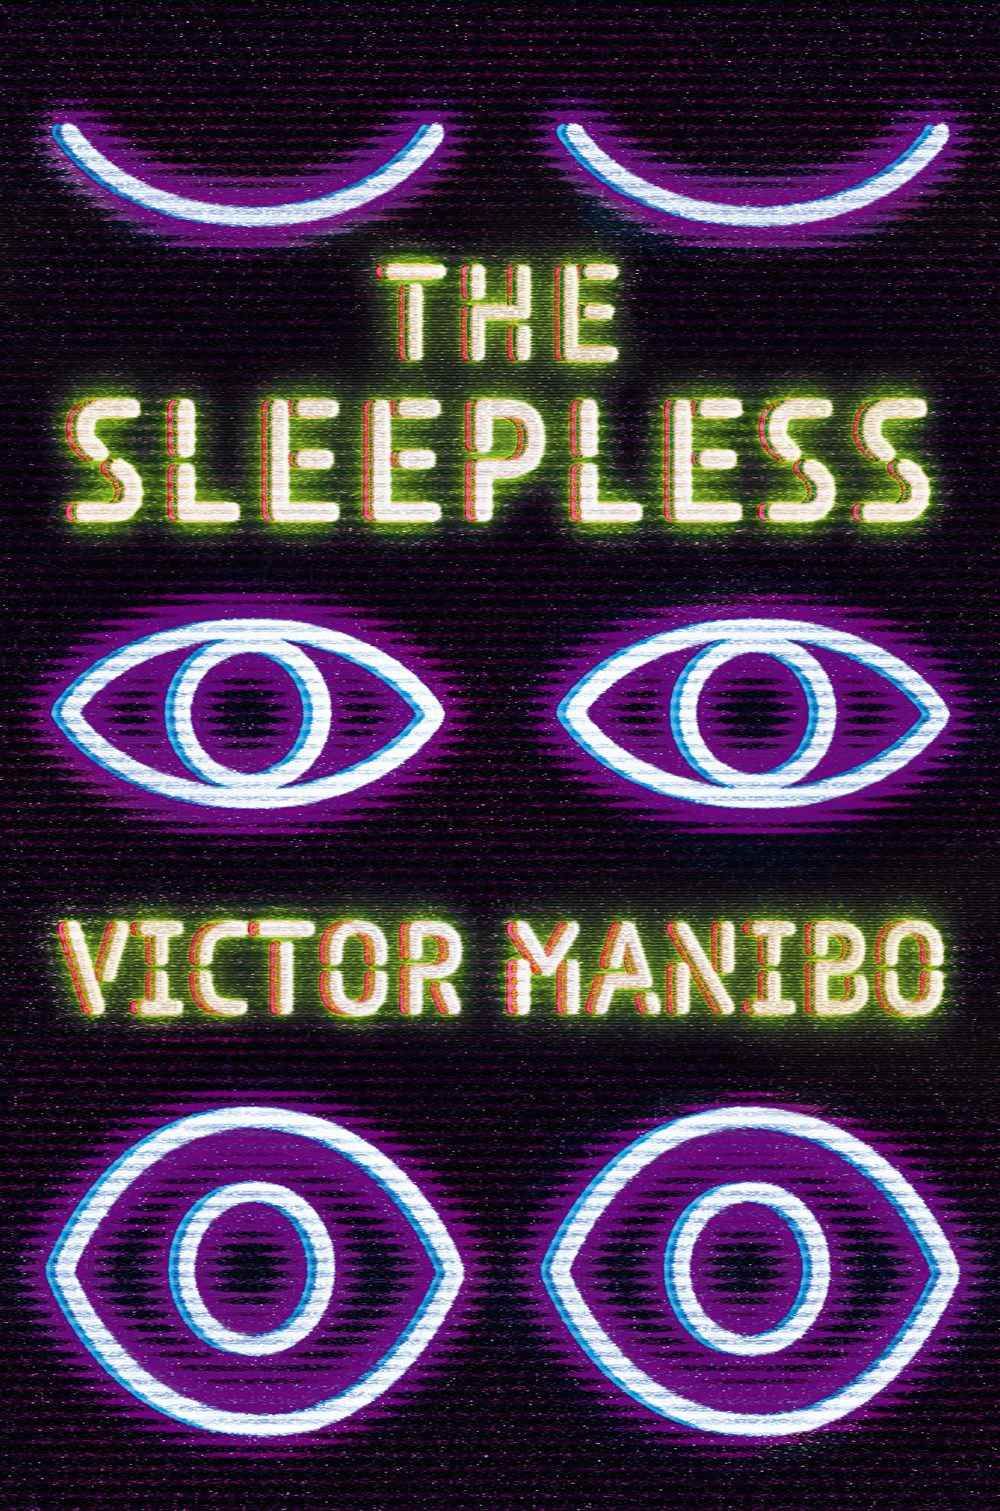 Image de couverture de The Sleepless de Victor Manibo, mettant en scène trois paires d'yeux dans des néons qui s'ouvrent progressivement.